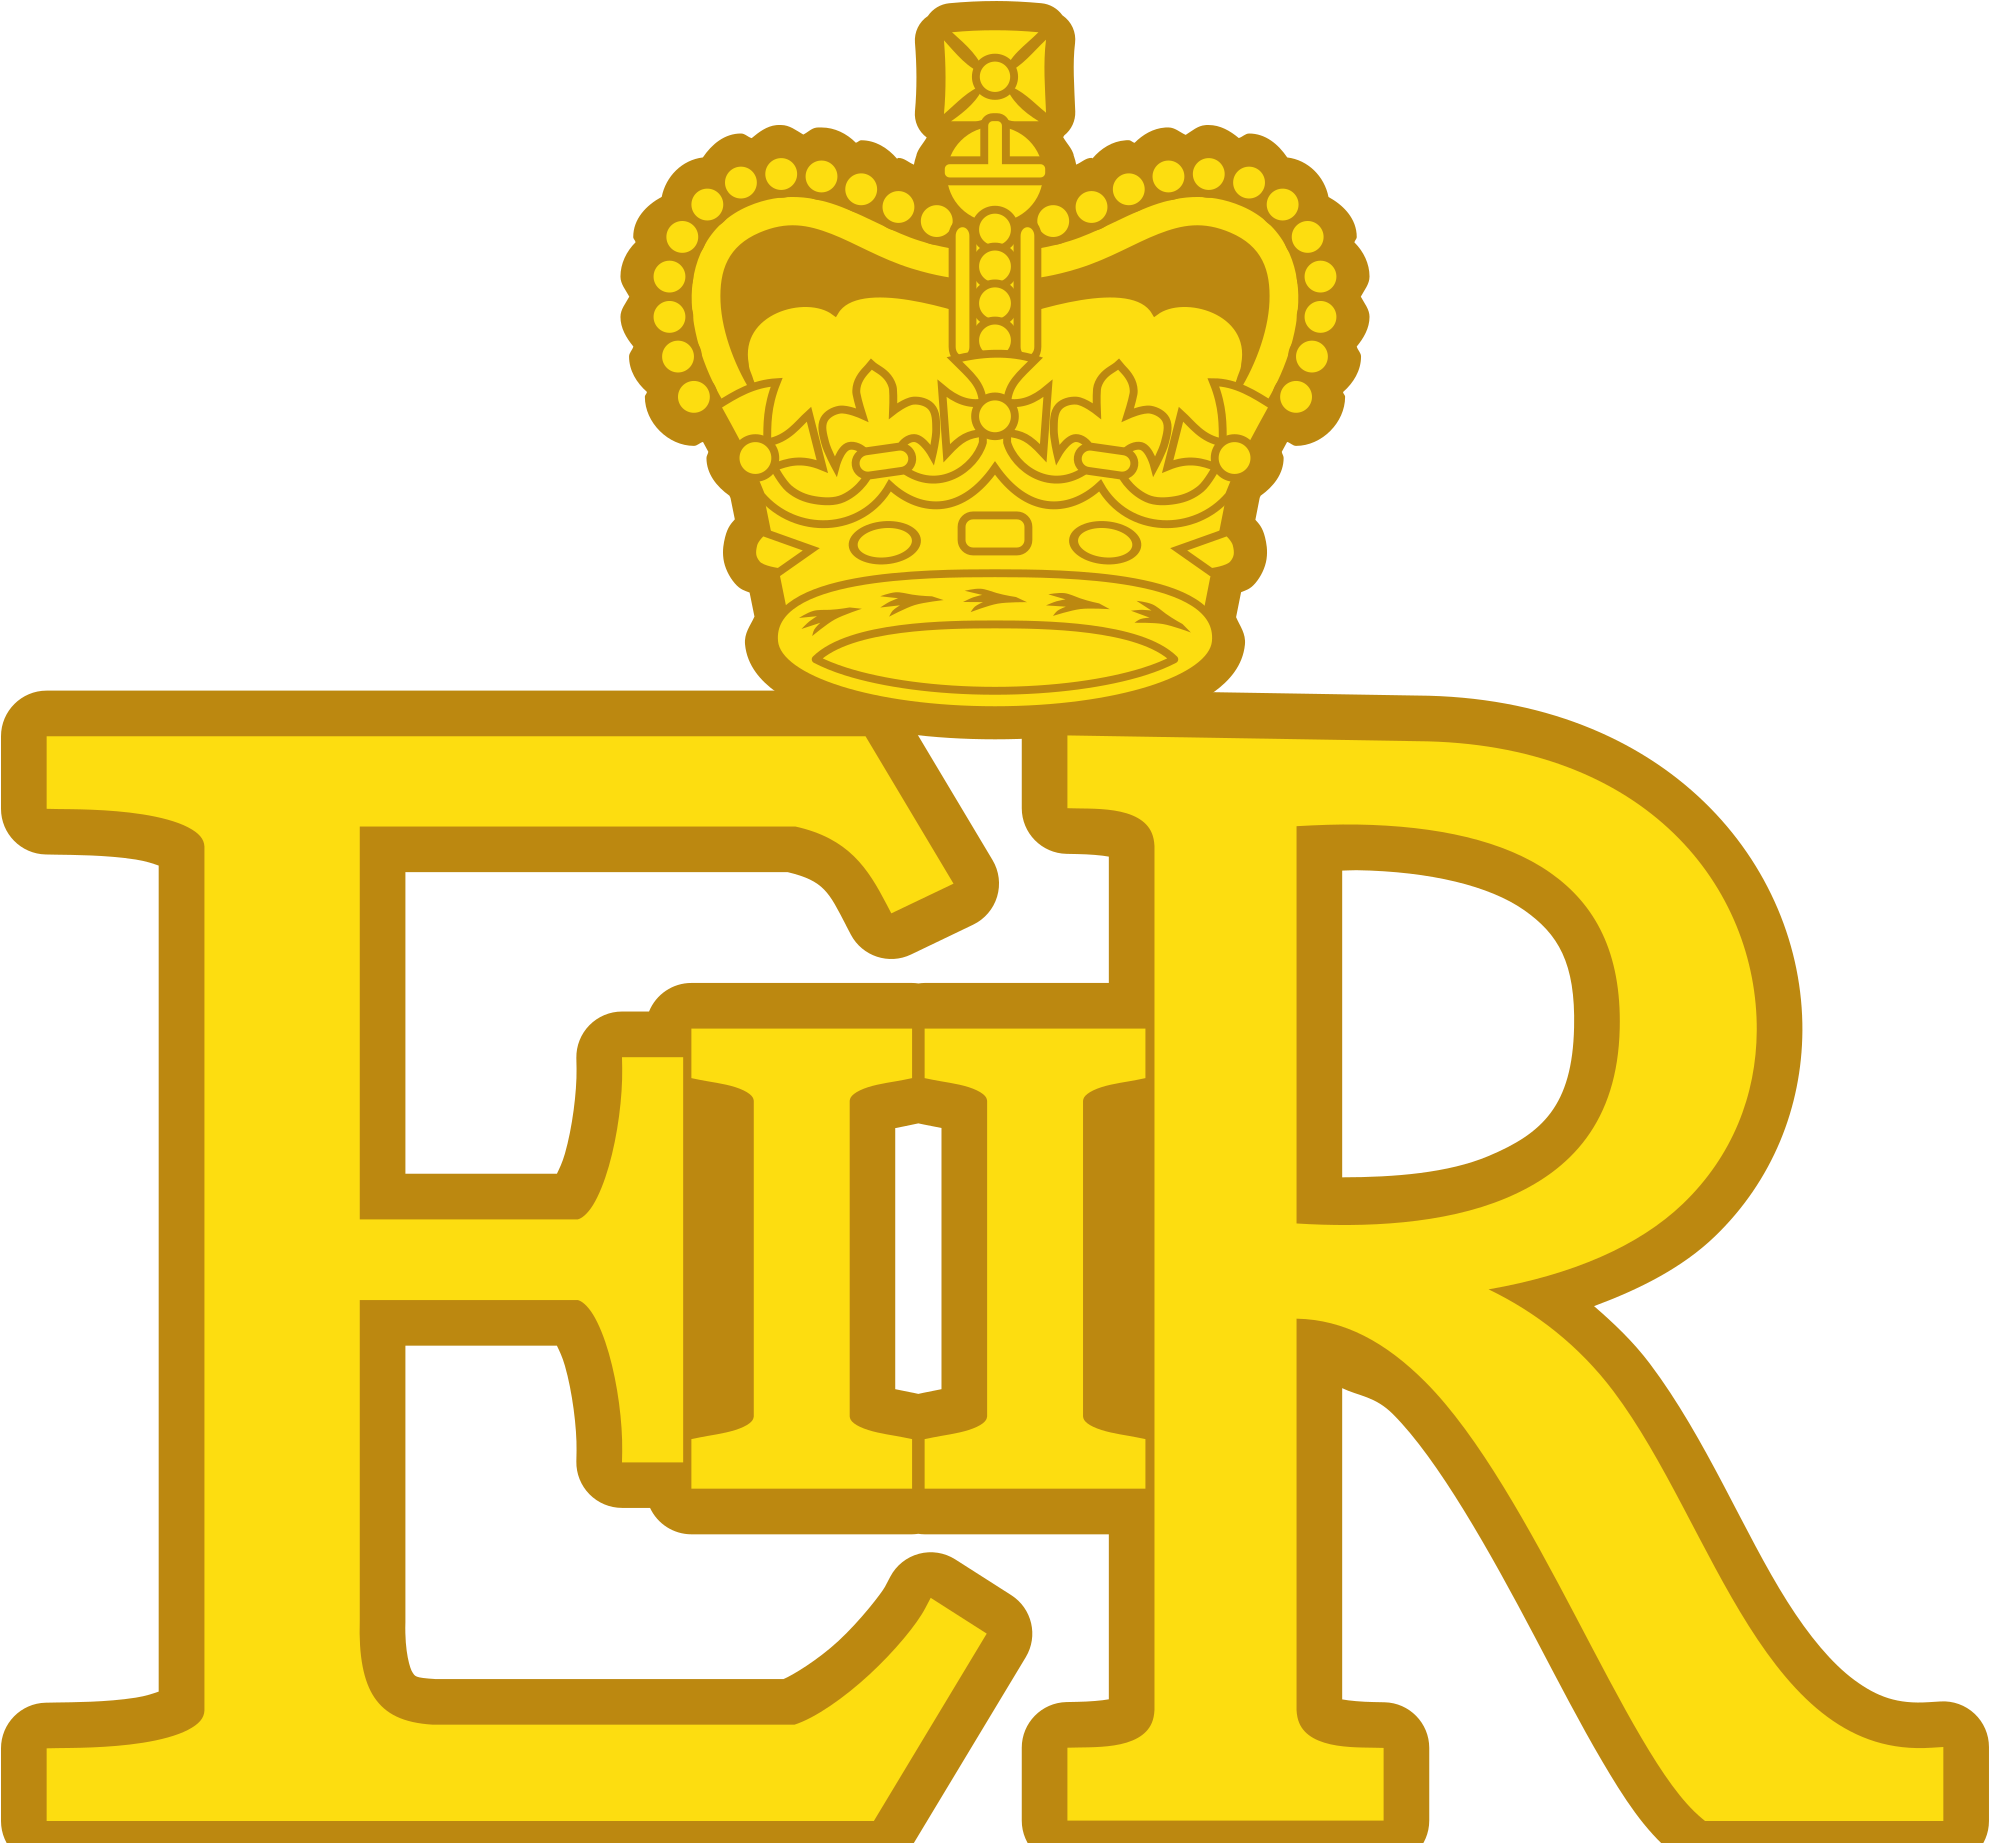 Open - Queen Elizabeth Ii Logo (2000x1842)